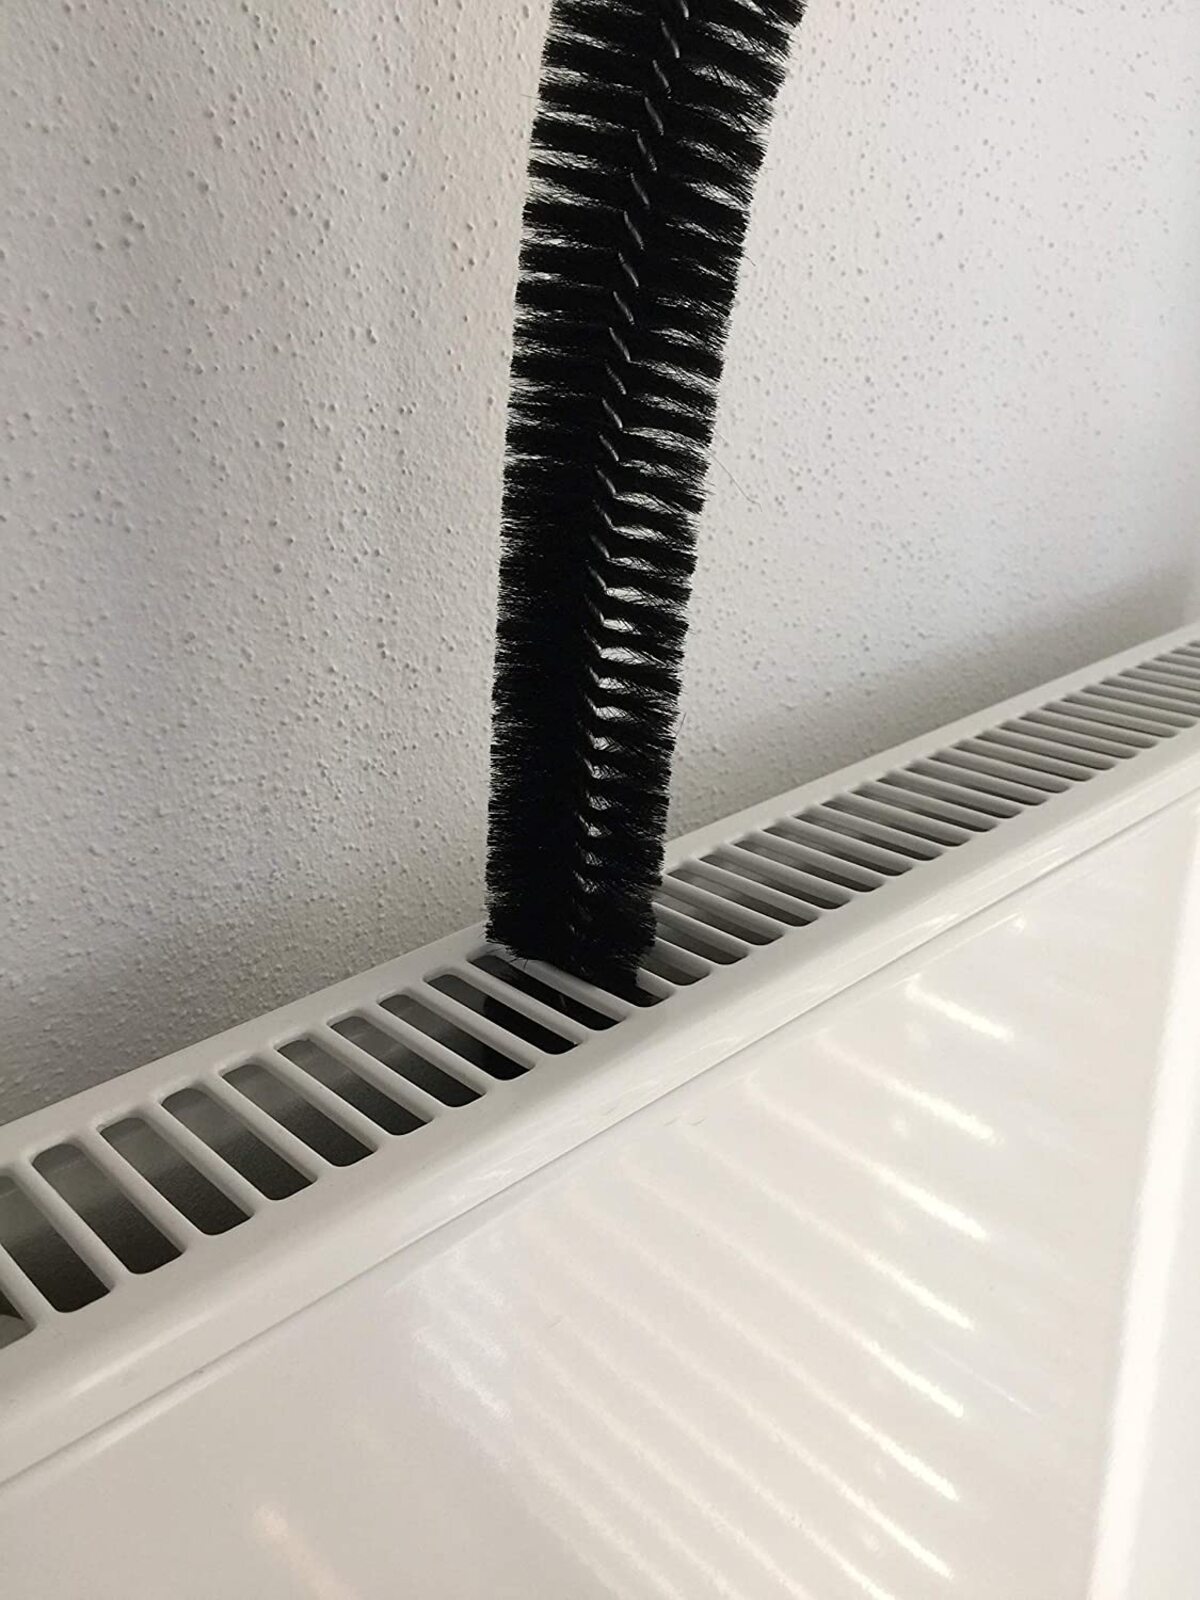 Los mejores cepillos para limpiar radiadores